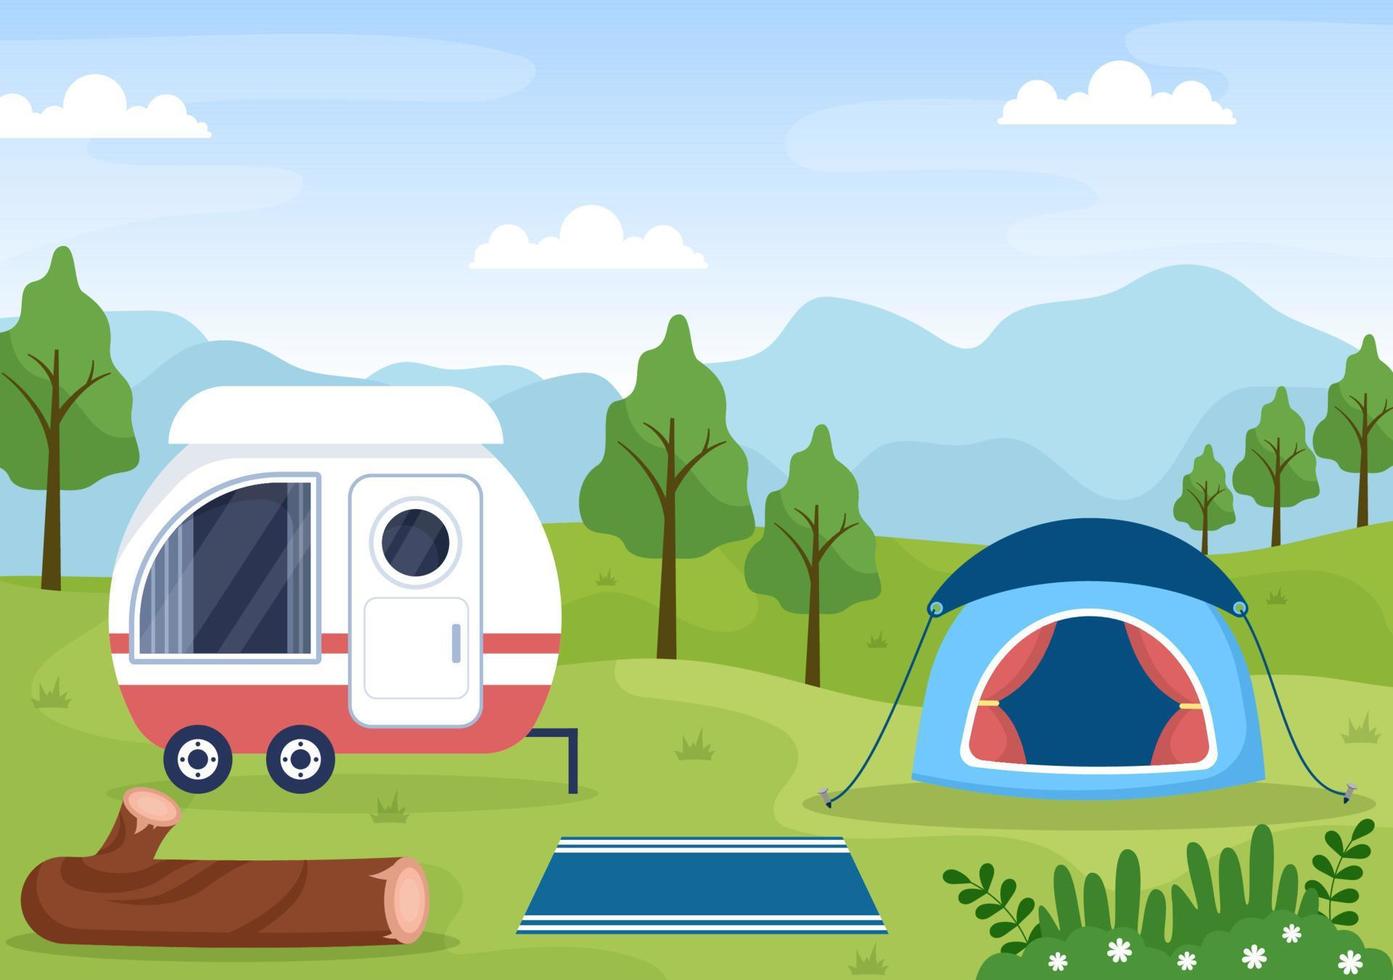 Wohnmobil-Hintergrundillustration mit Zelt, Lagerfeuer, Brennholz, Wohnmobil und seiner Ausrüstung für Menschen auf Abenteuertouren oder Urlaub im Wald oder in den Bergen vektor